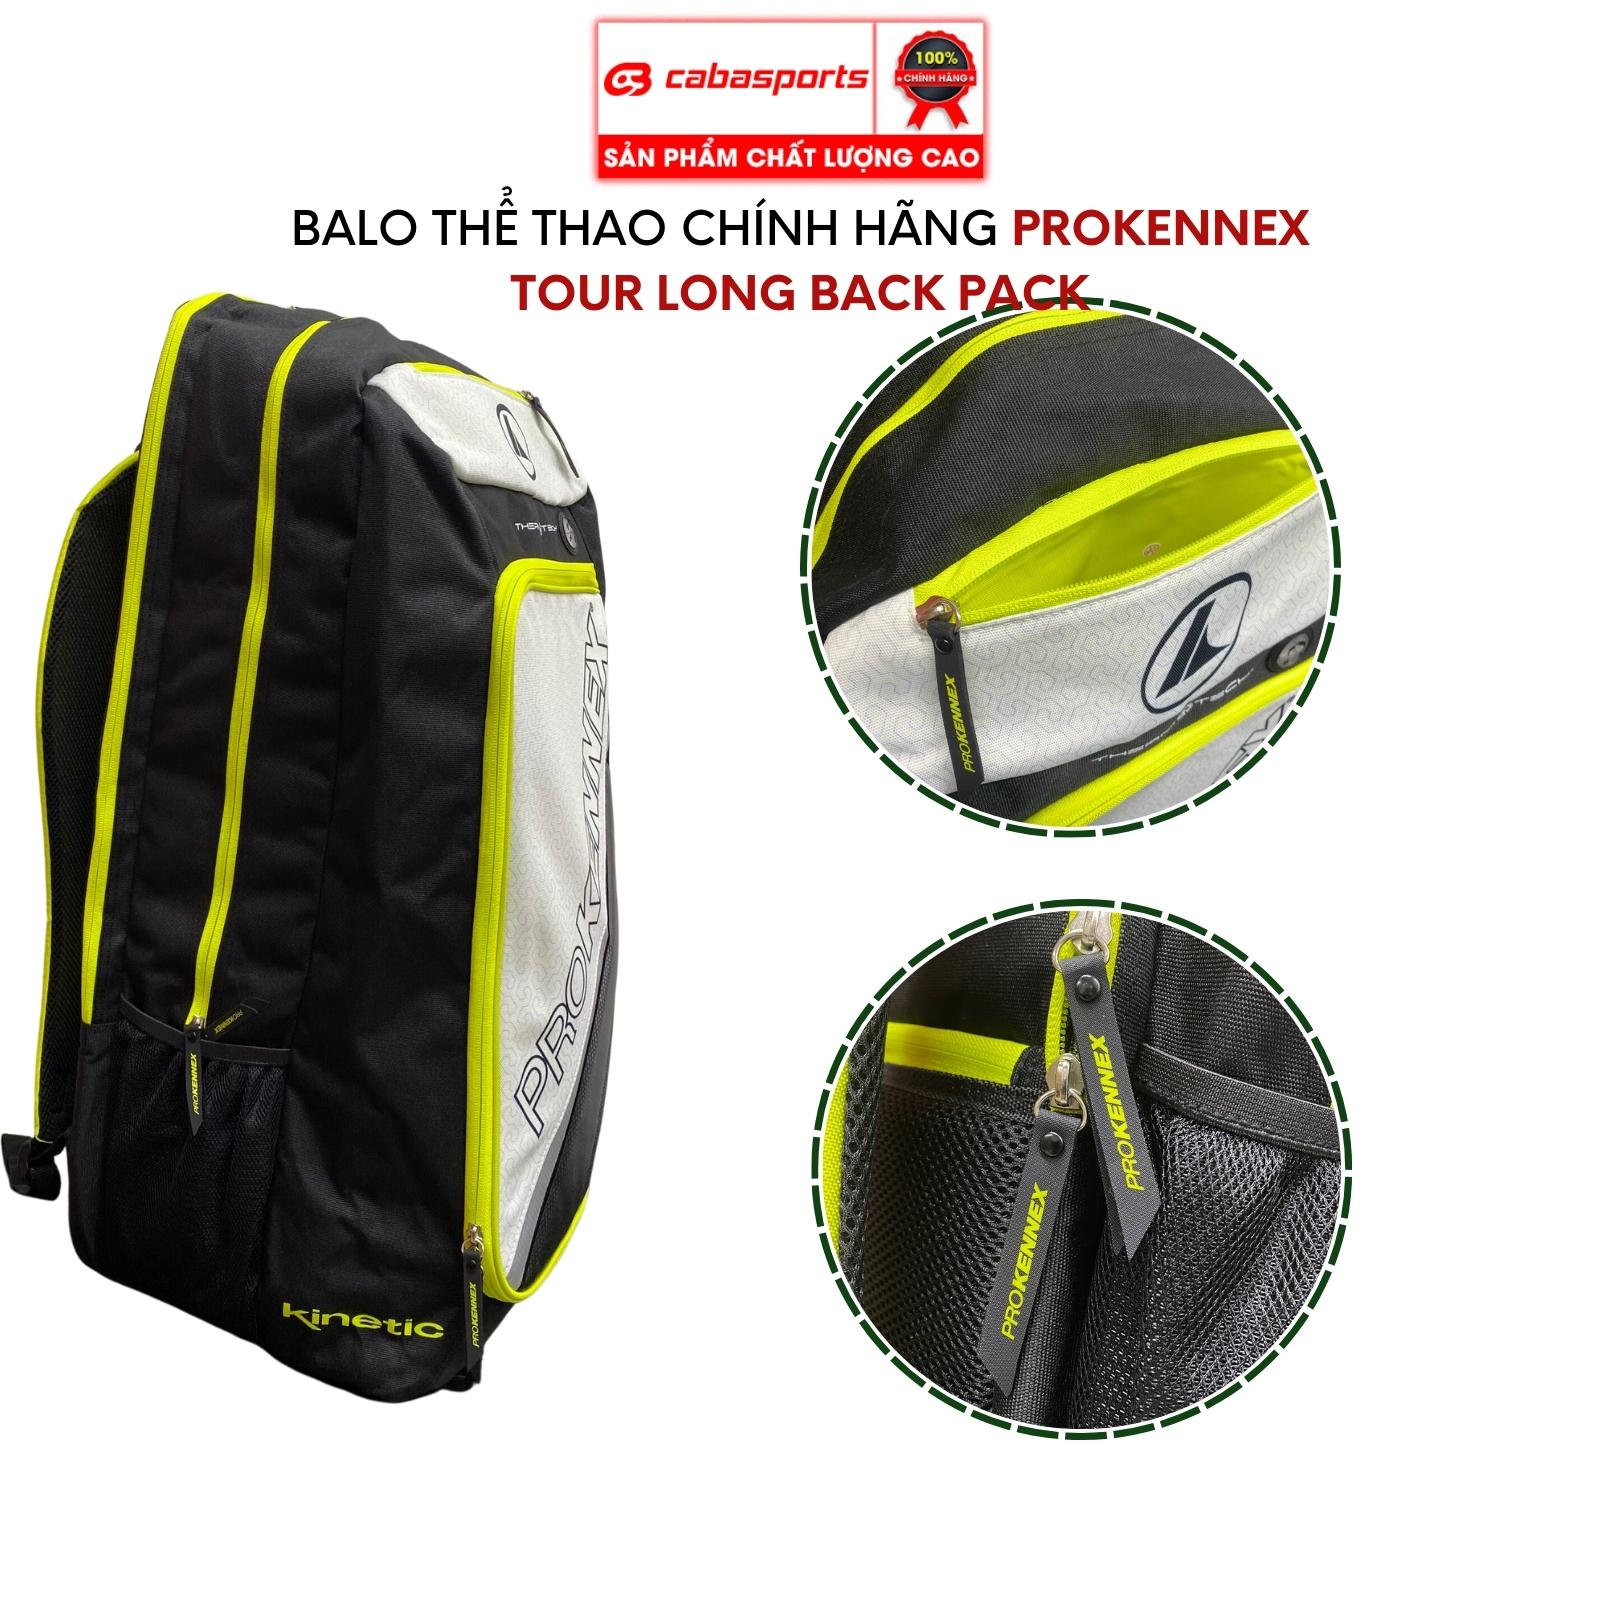 Balo thể thao Prokennex Tour Long Pack Back cao cấp chính hãng, balo đựng phụ kiện thể thao siêu rộng rãi